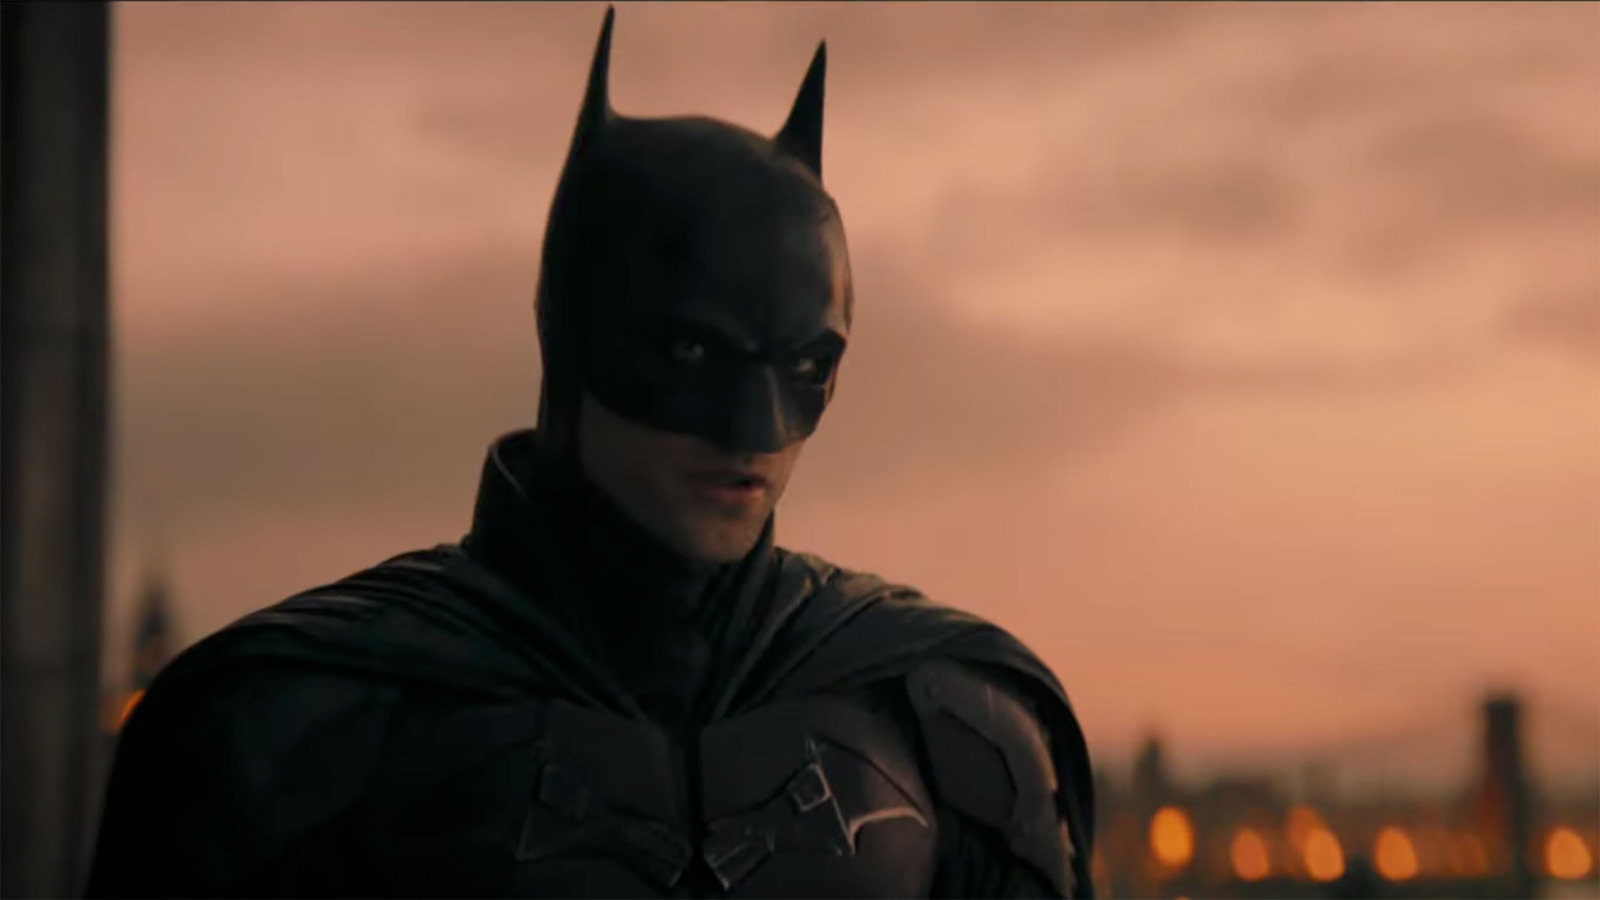 Wait, Is The Batman The Best Batman Movie?